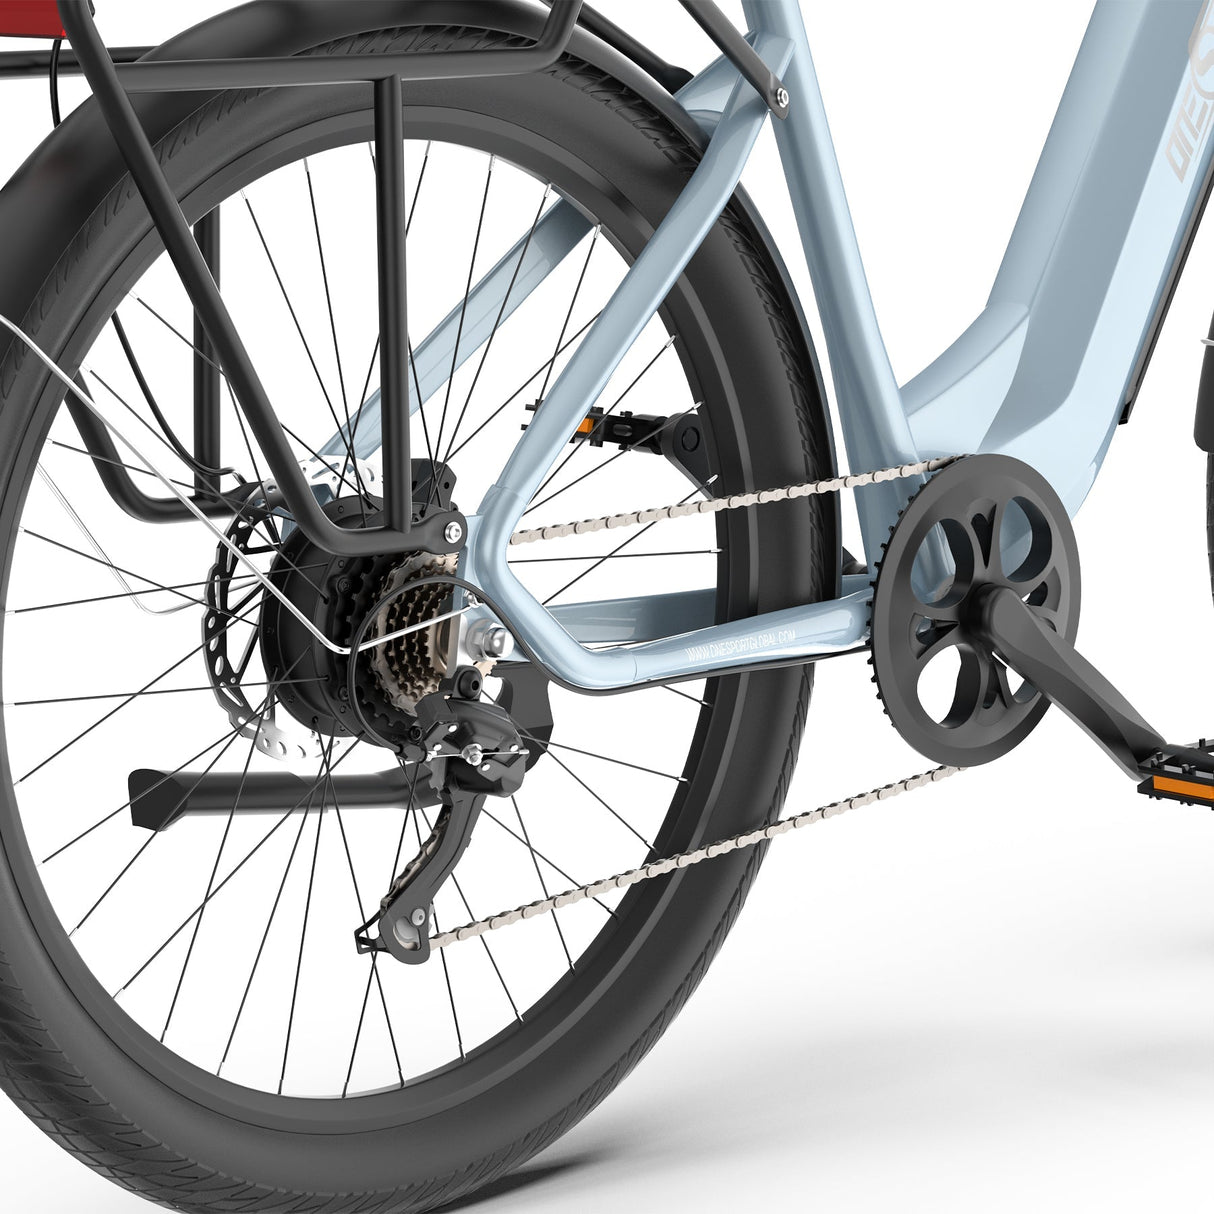 Système de transmission pas à pas pour vélo électrique OneSport OT05 bleu-gris